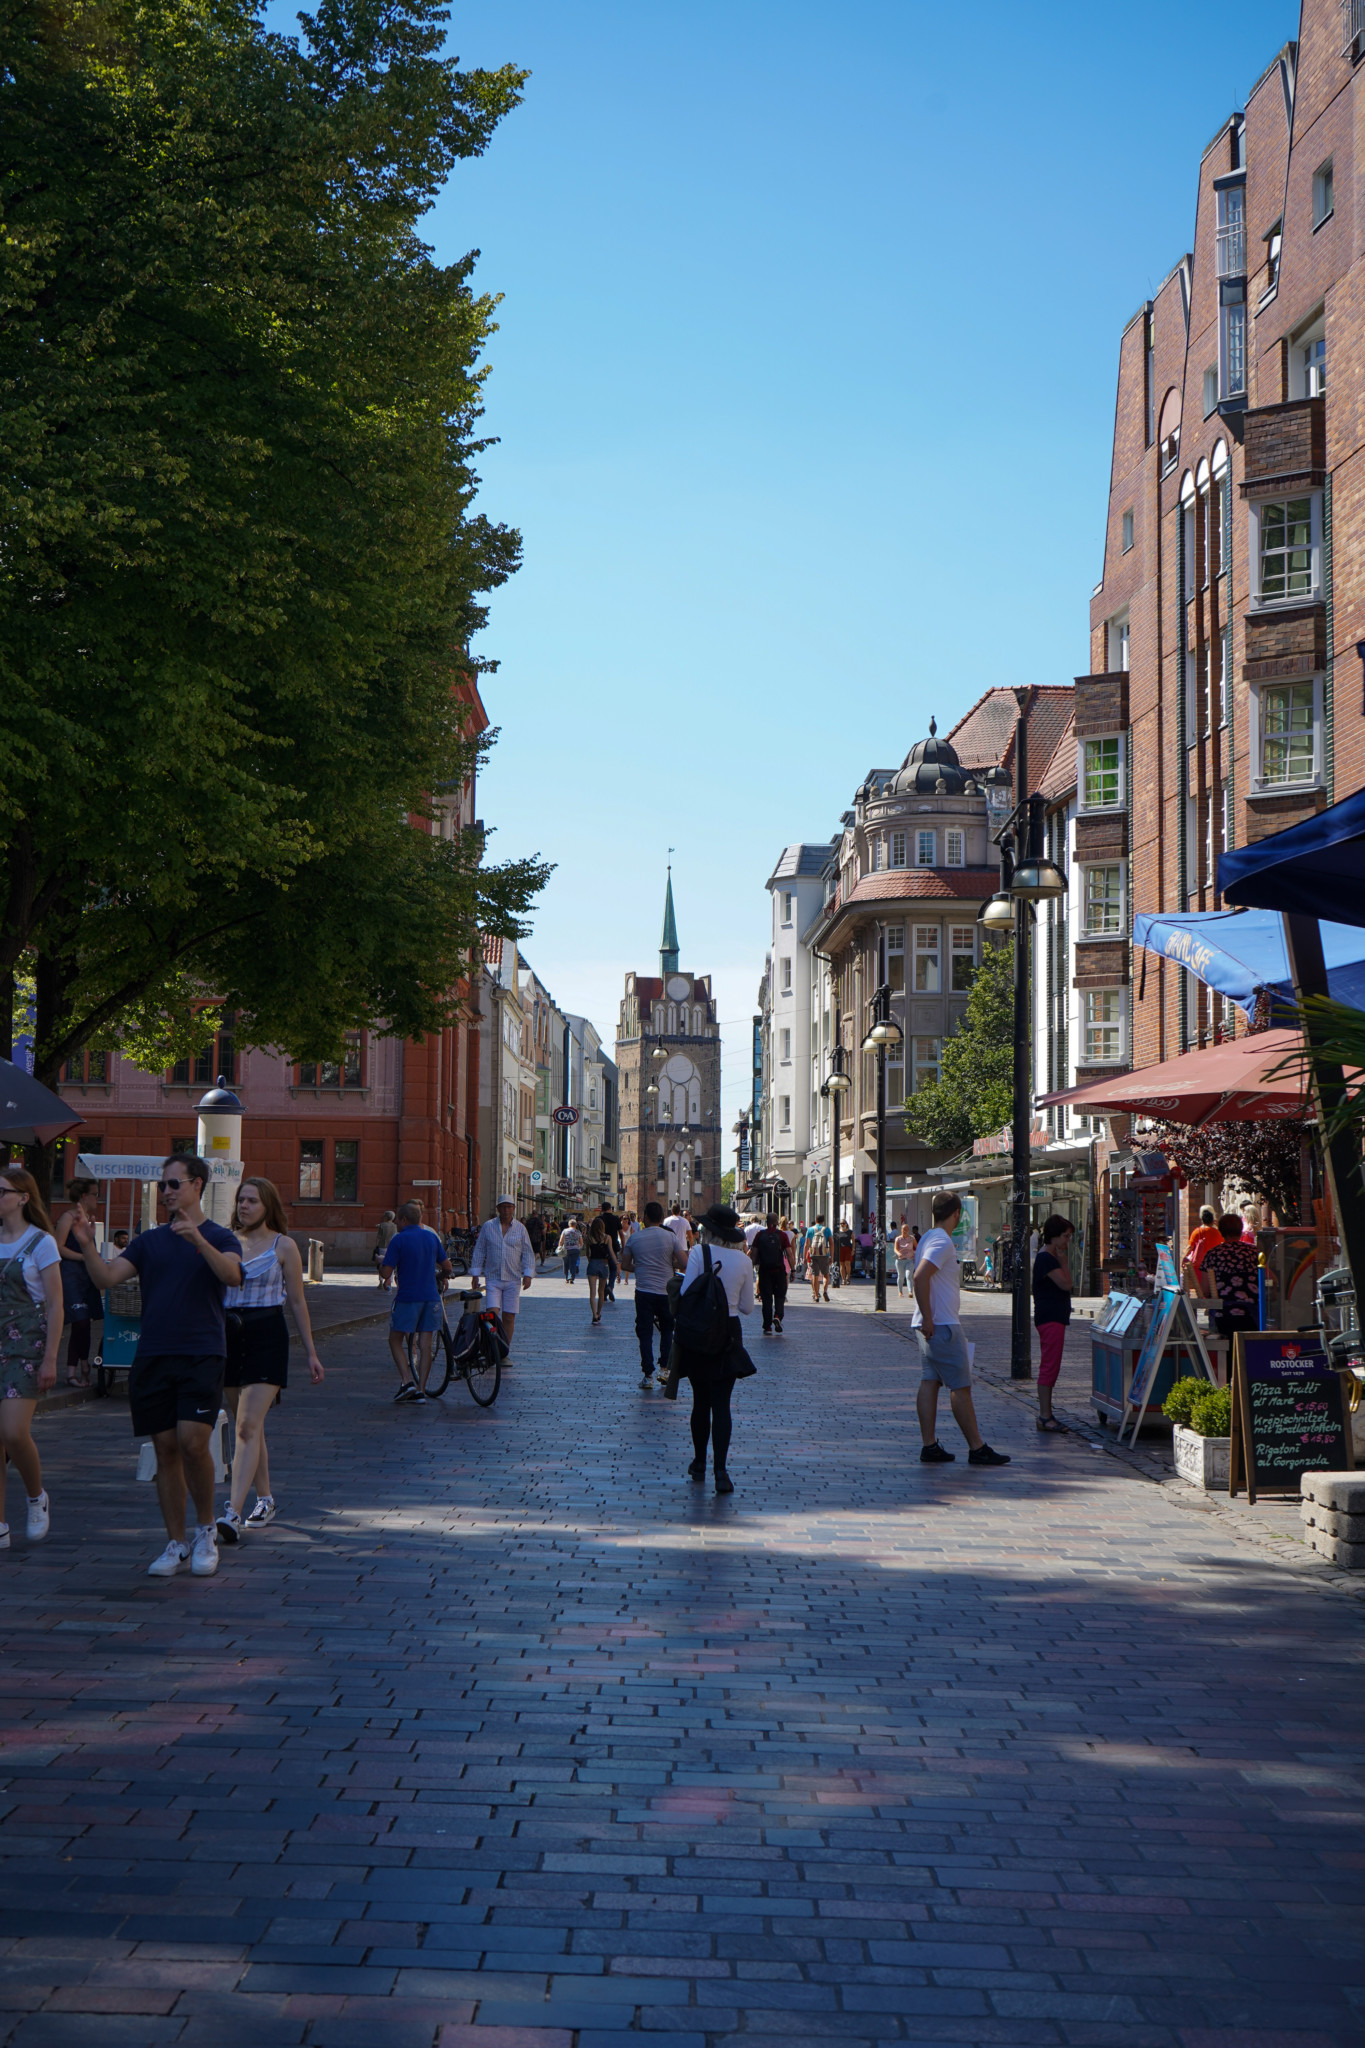 Kröpeliner Straße als wichtige Sehenswürdigkeit in Rostock